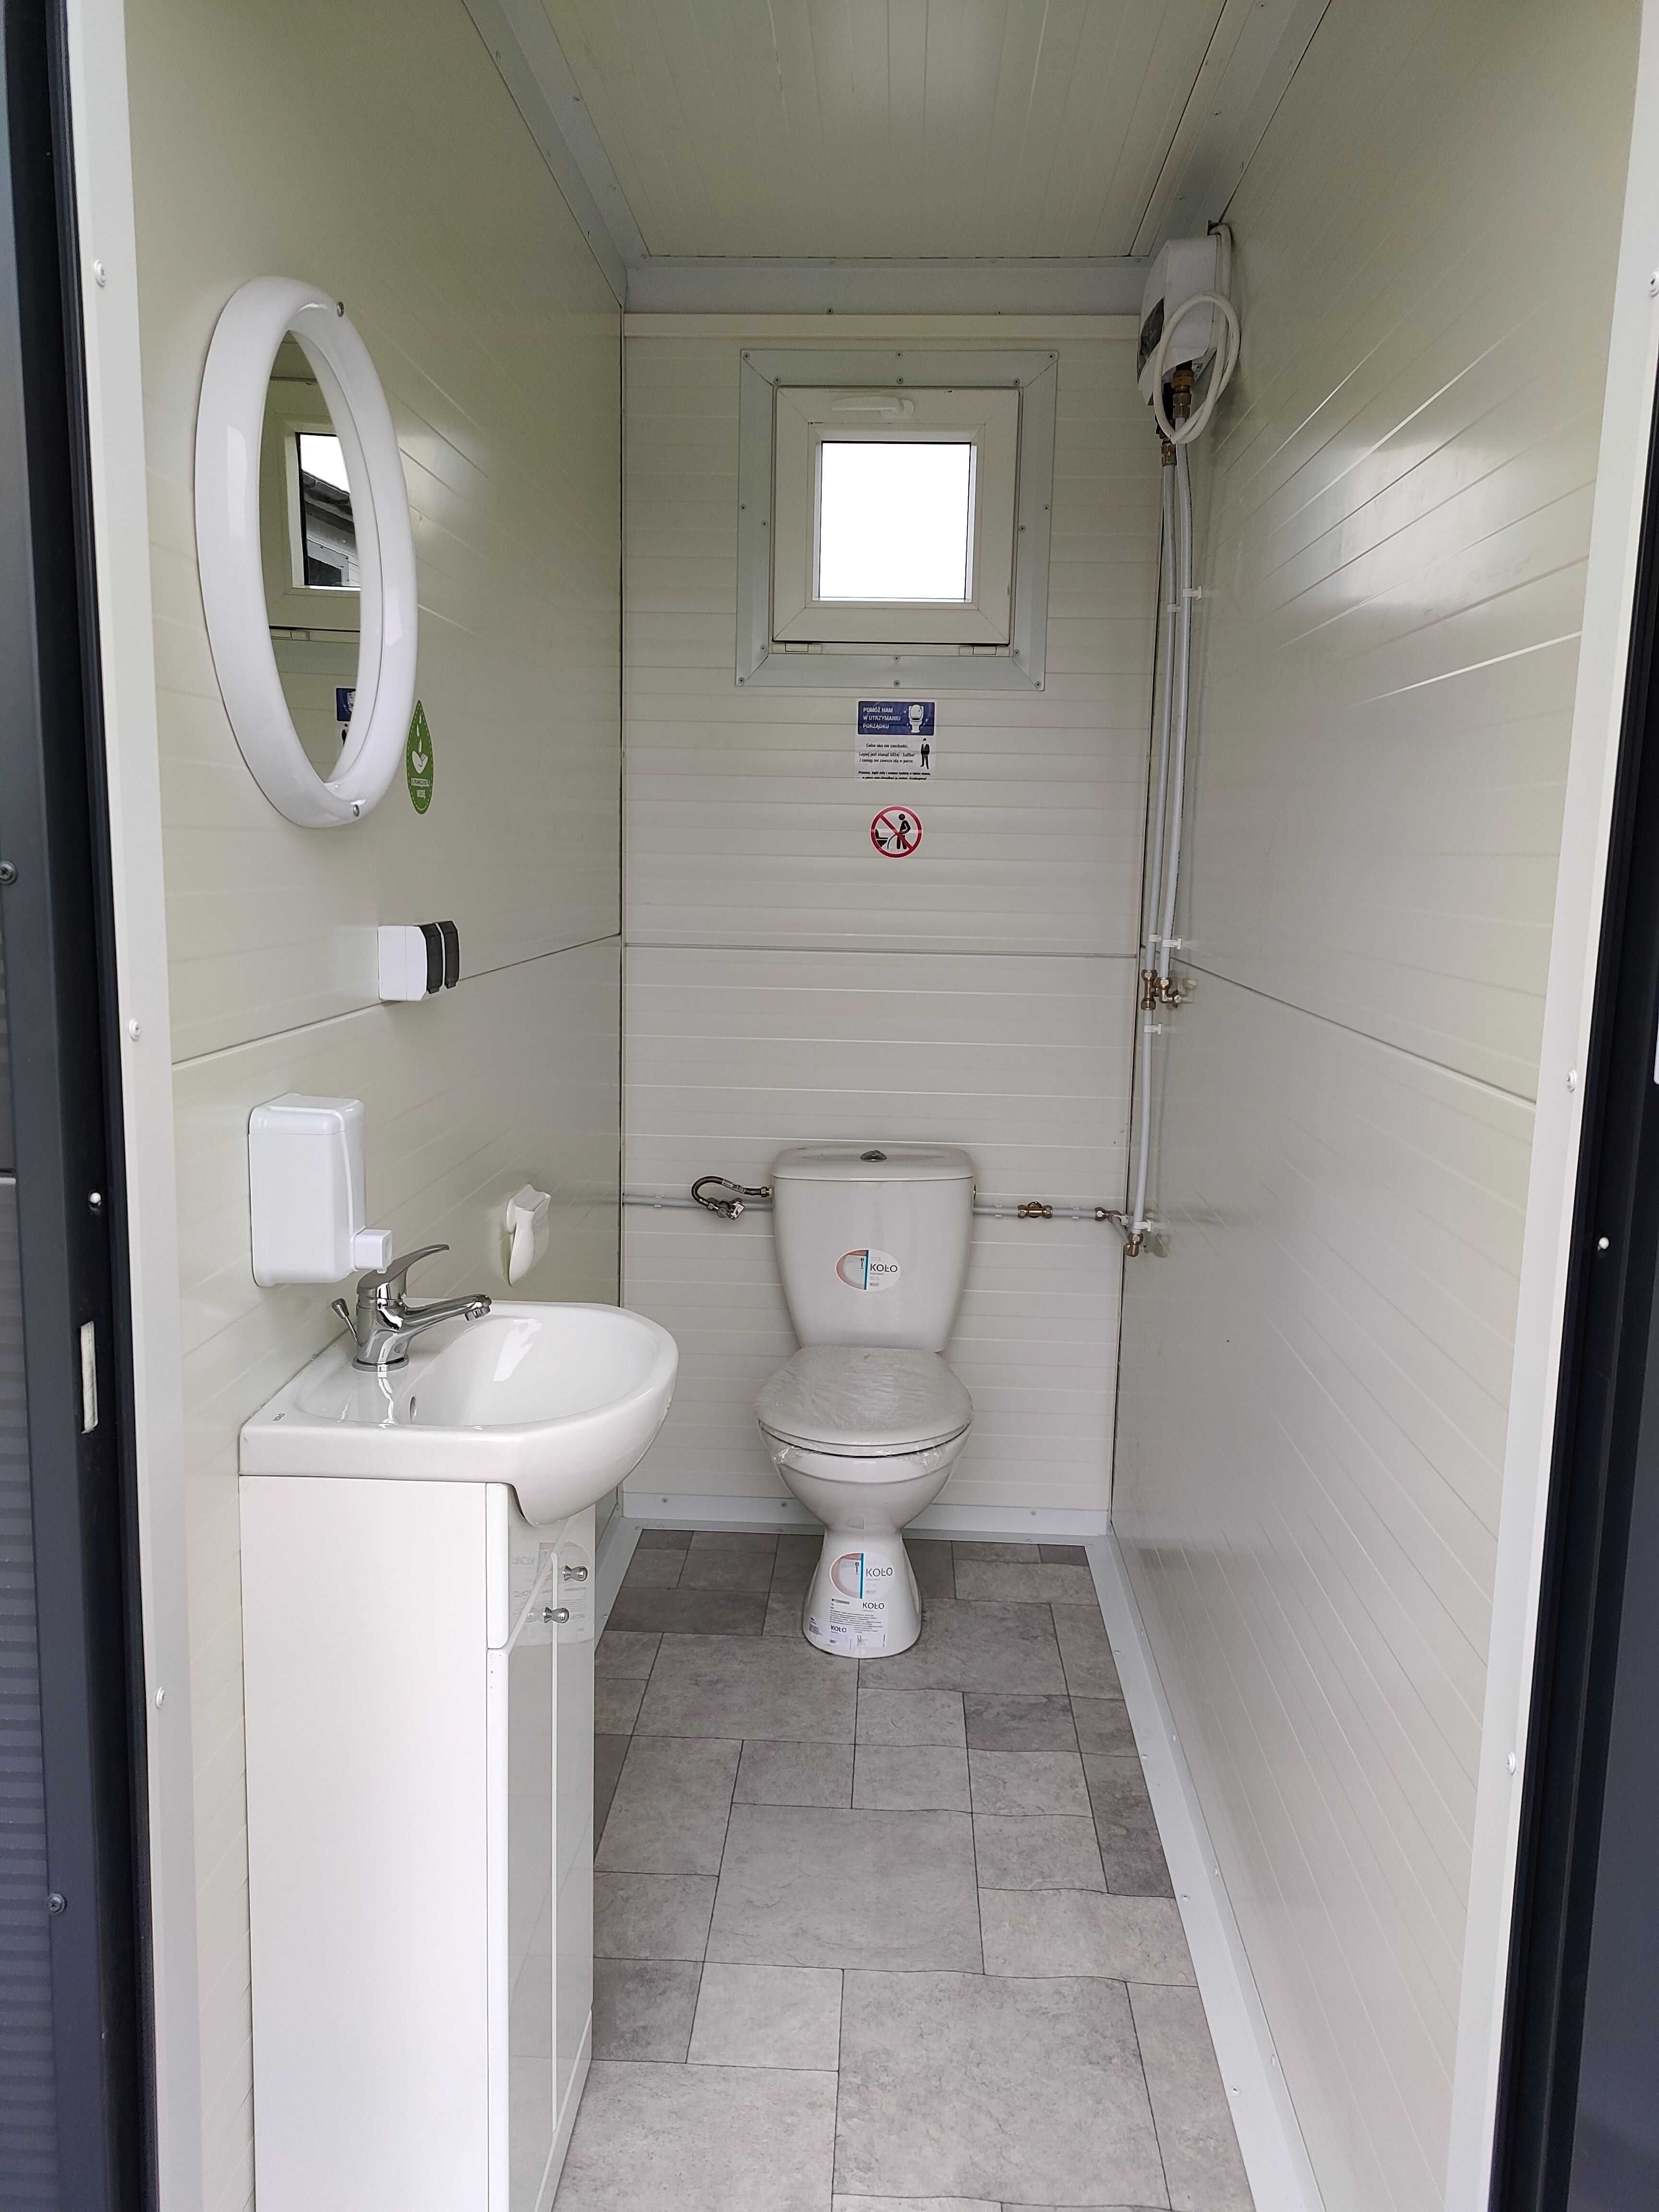 WC toaleta łazienka sanitarny pawilon kontener socjal natrysk prysznic